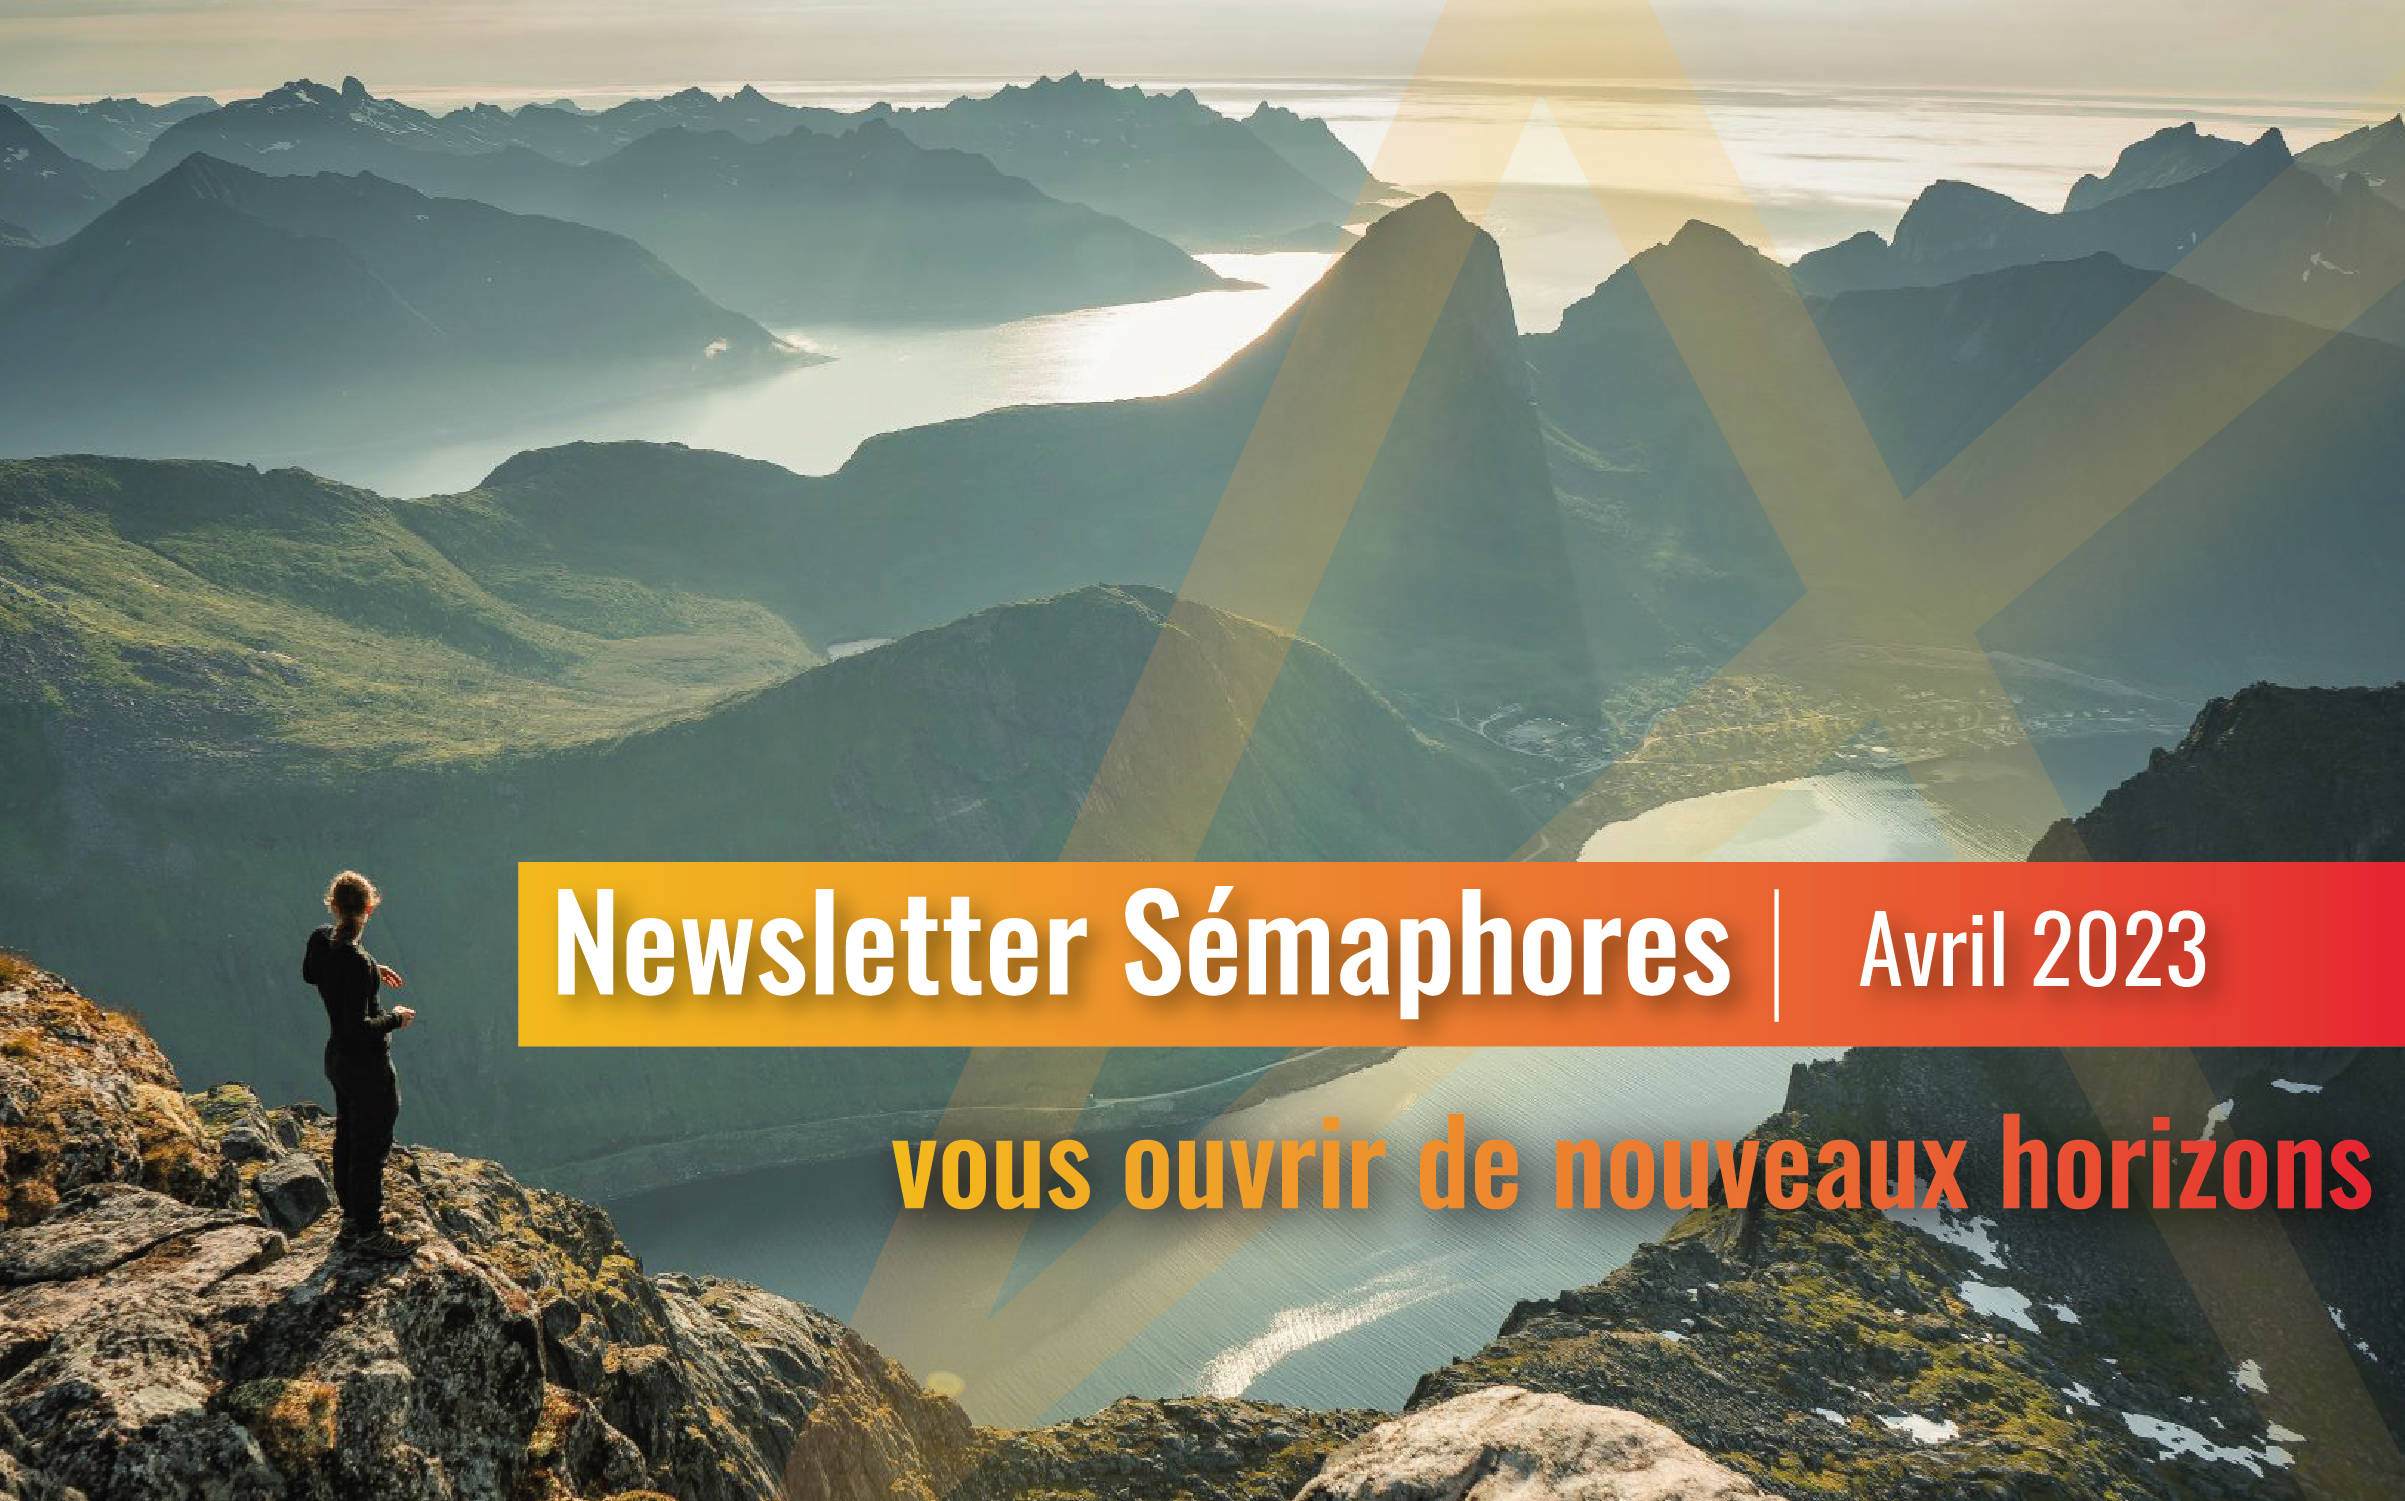 La newsletter Sémaphores - Avril 2023